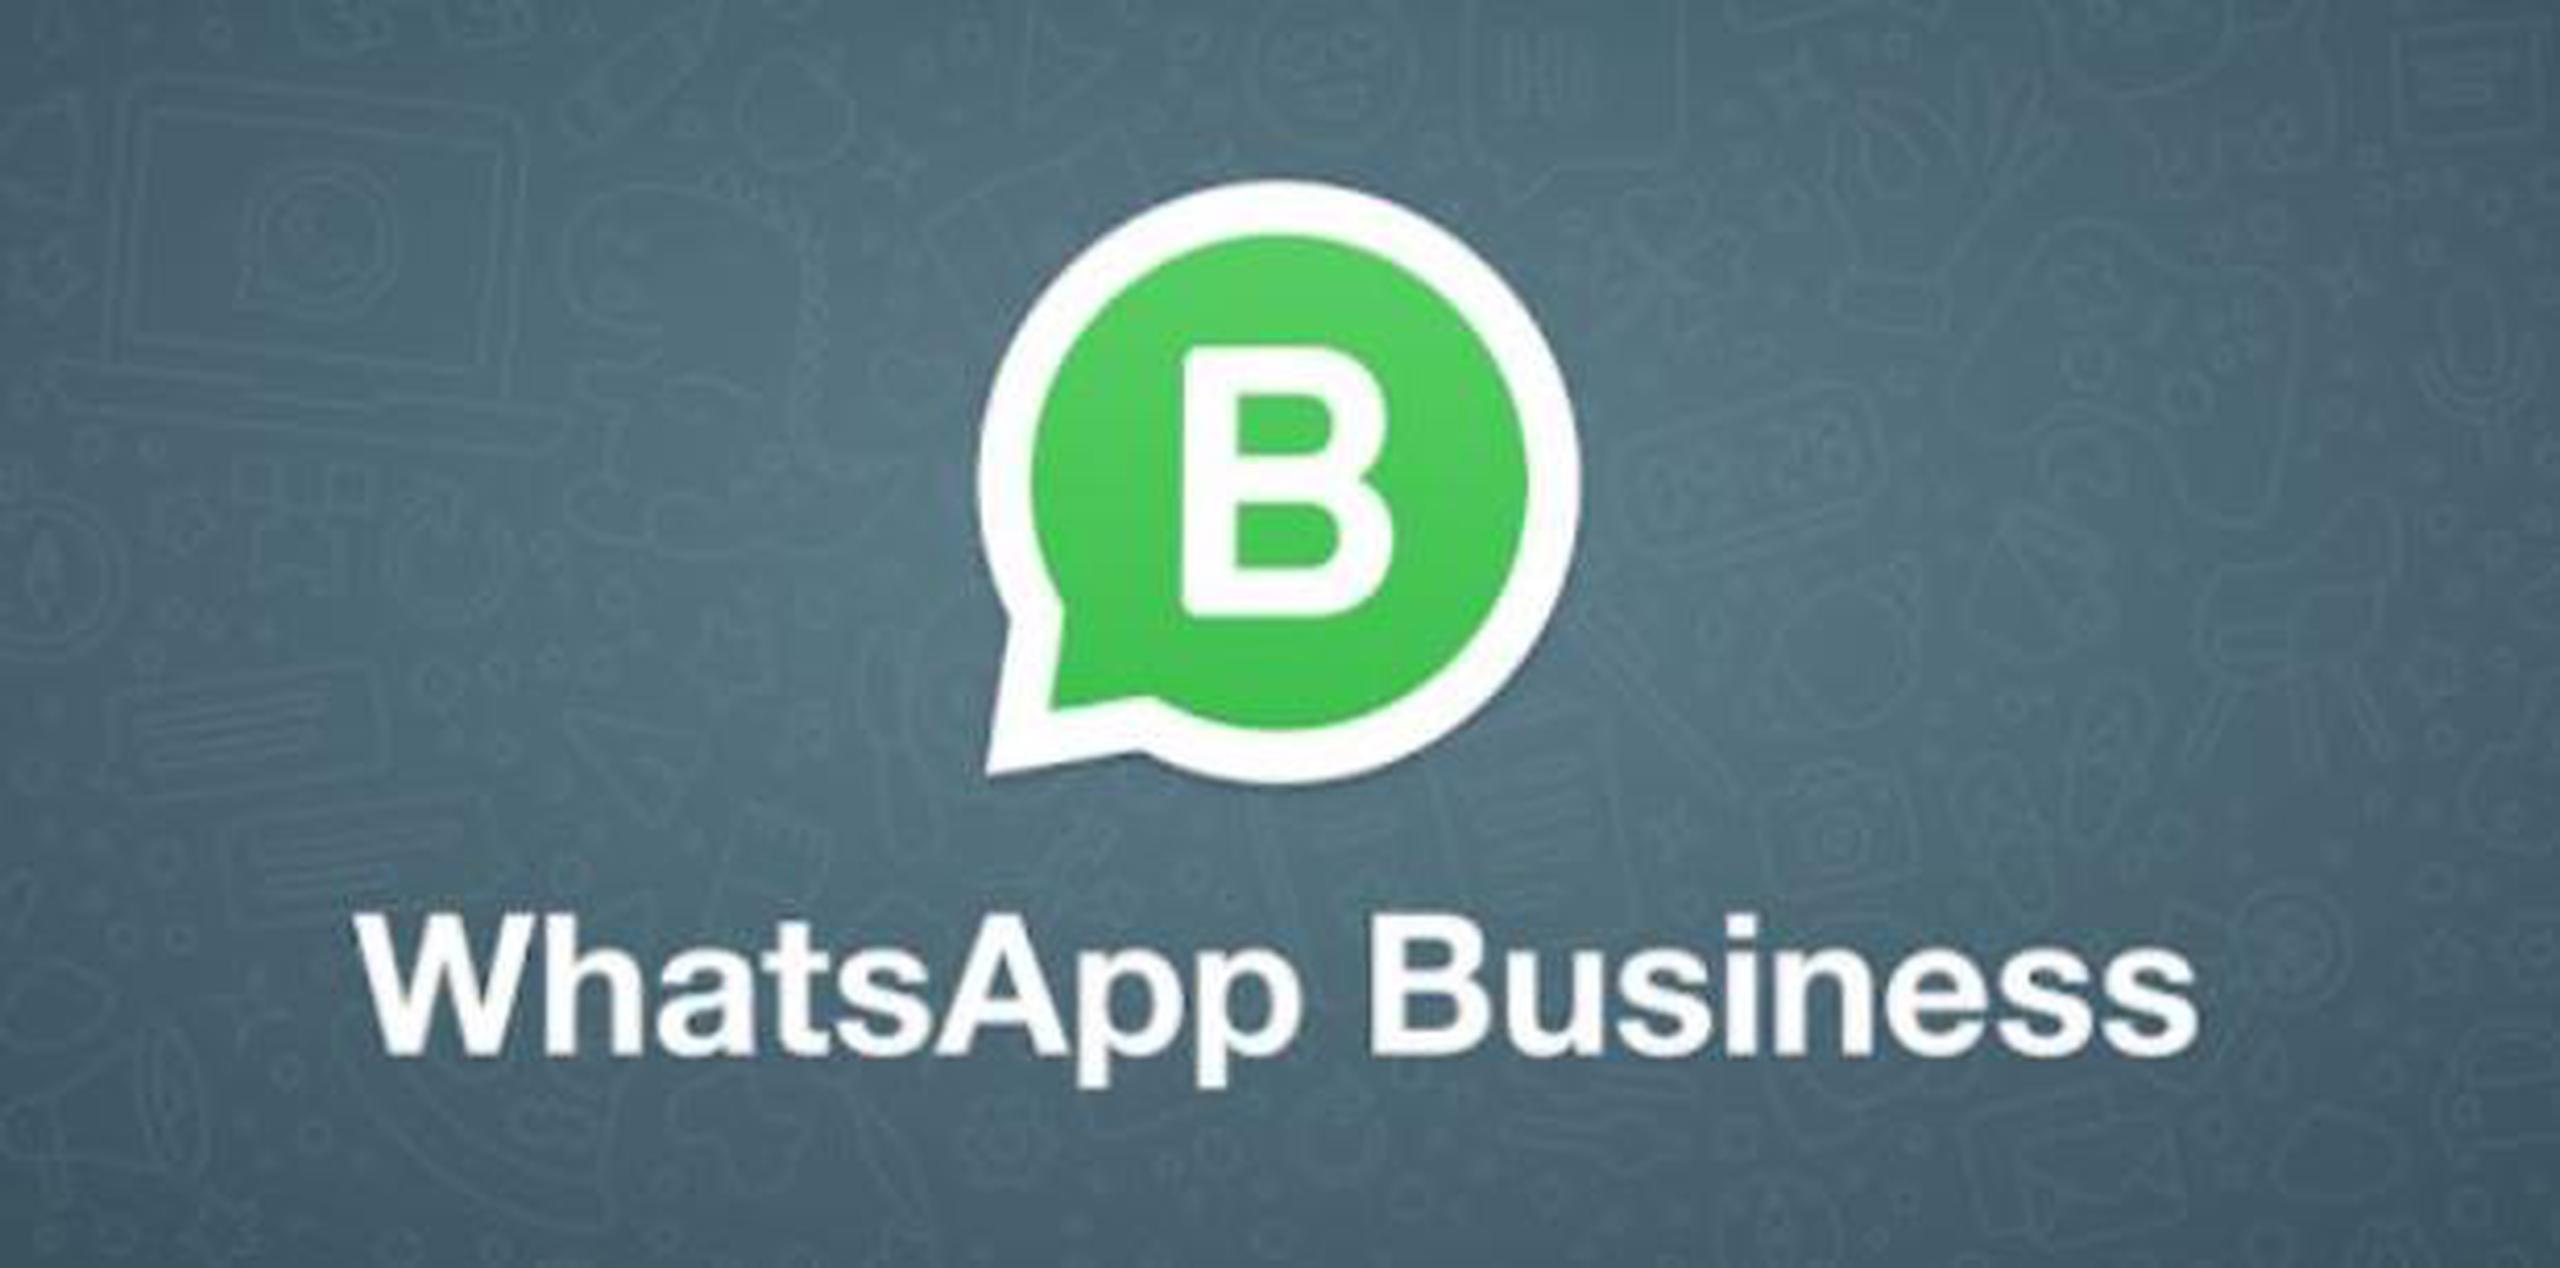 Aunque el usuario podrá seguir utilizando gratuitamente la aplicación, las empresas serán cargadas con un precio fijo por cada mensaje. (WhatsApp)